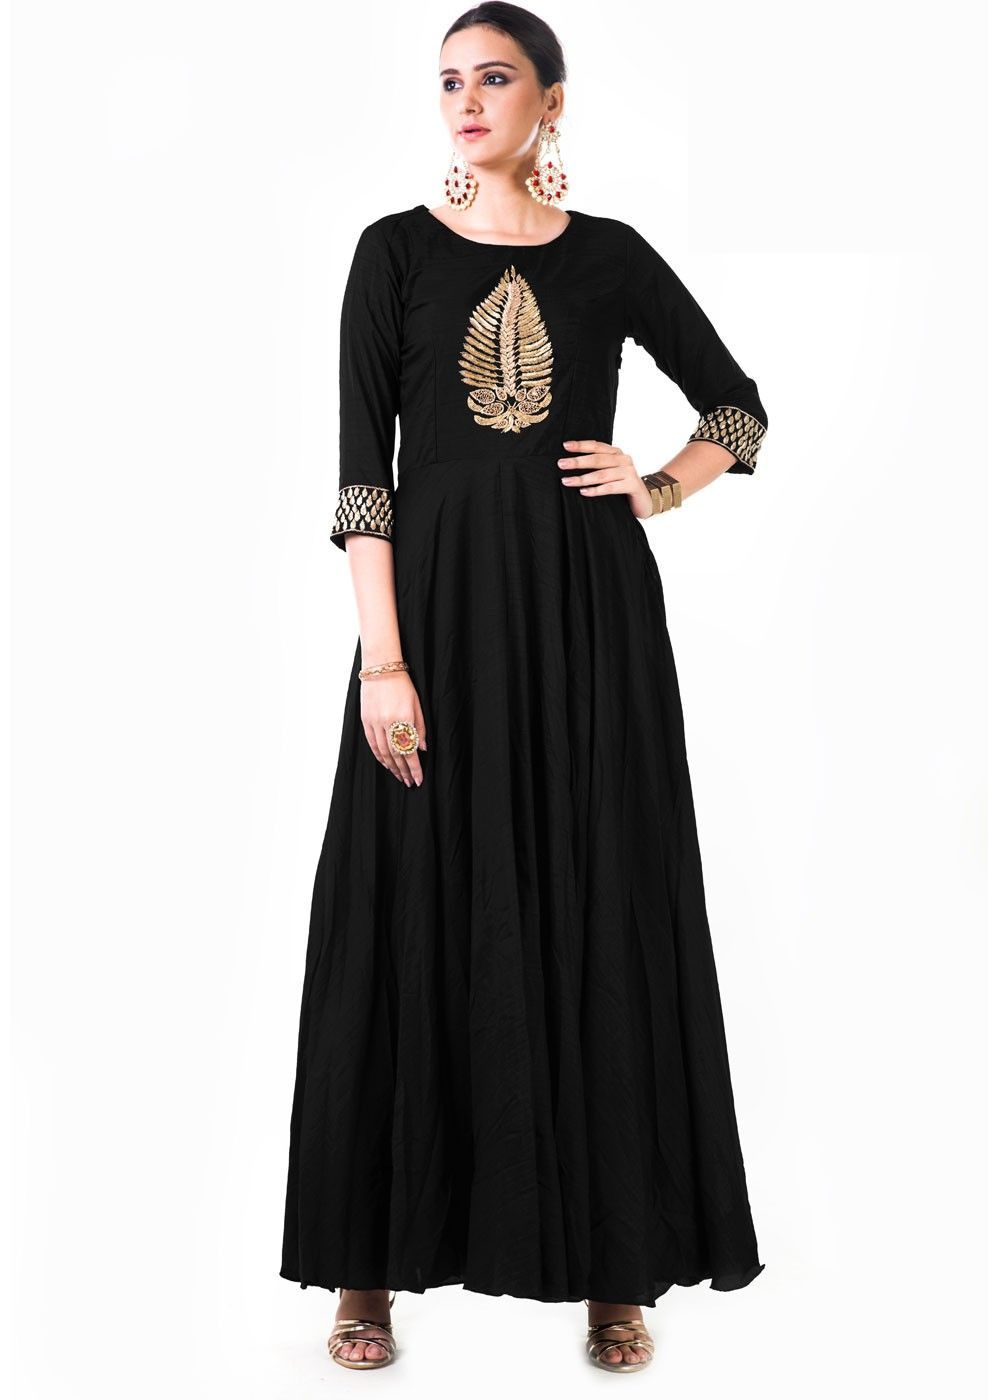 black color maxi dress